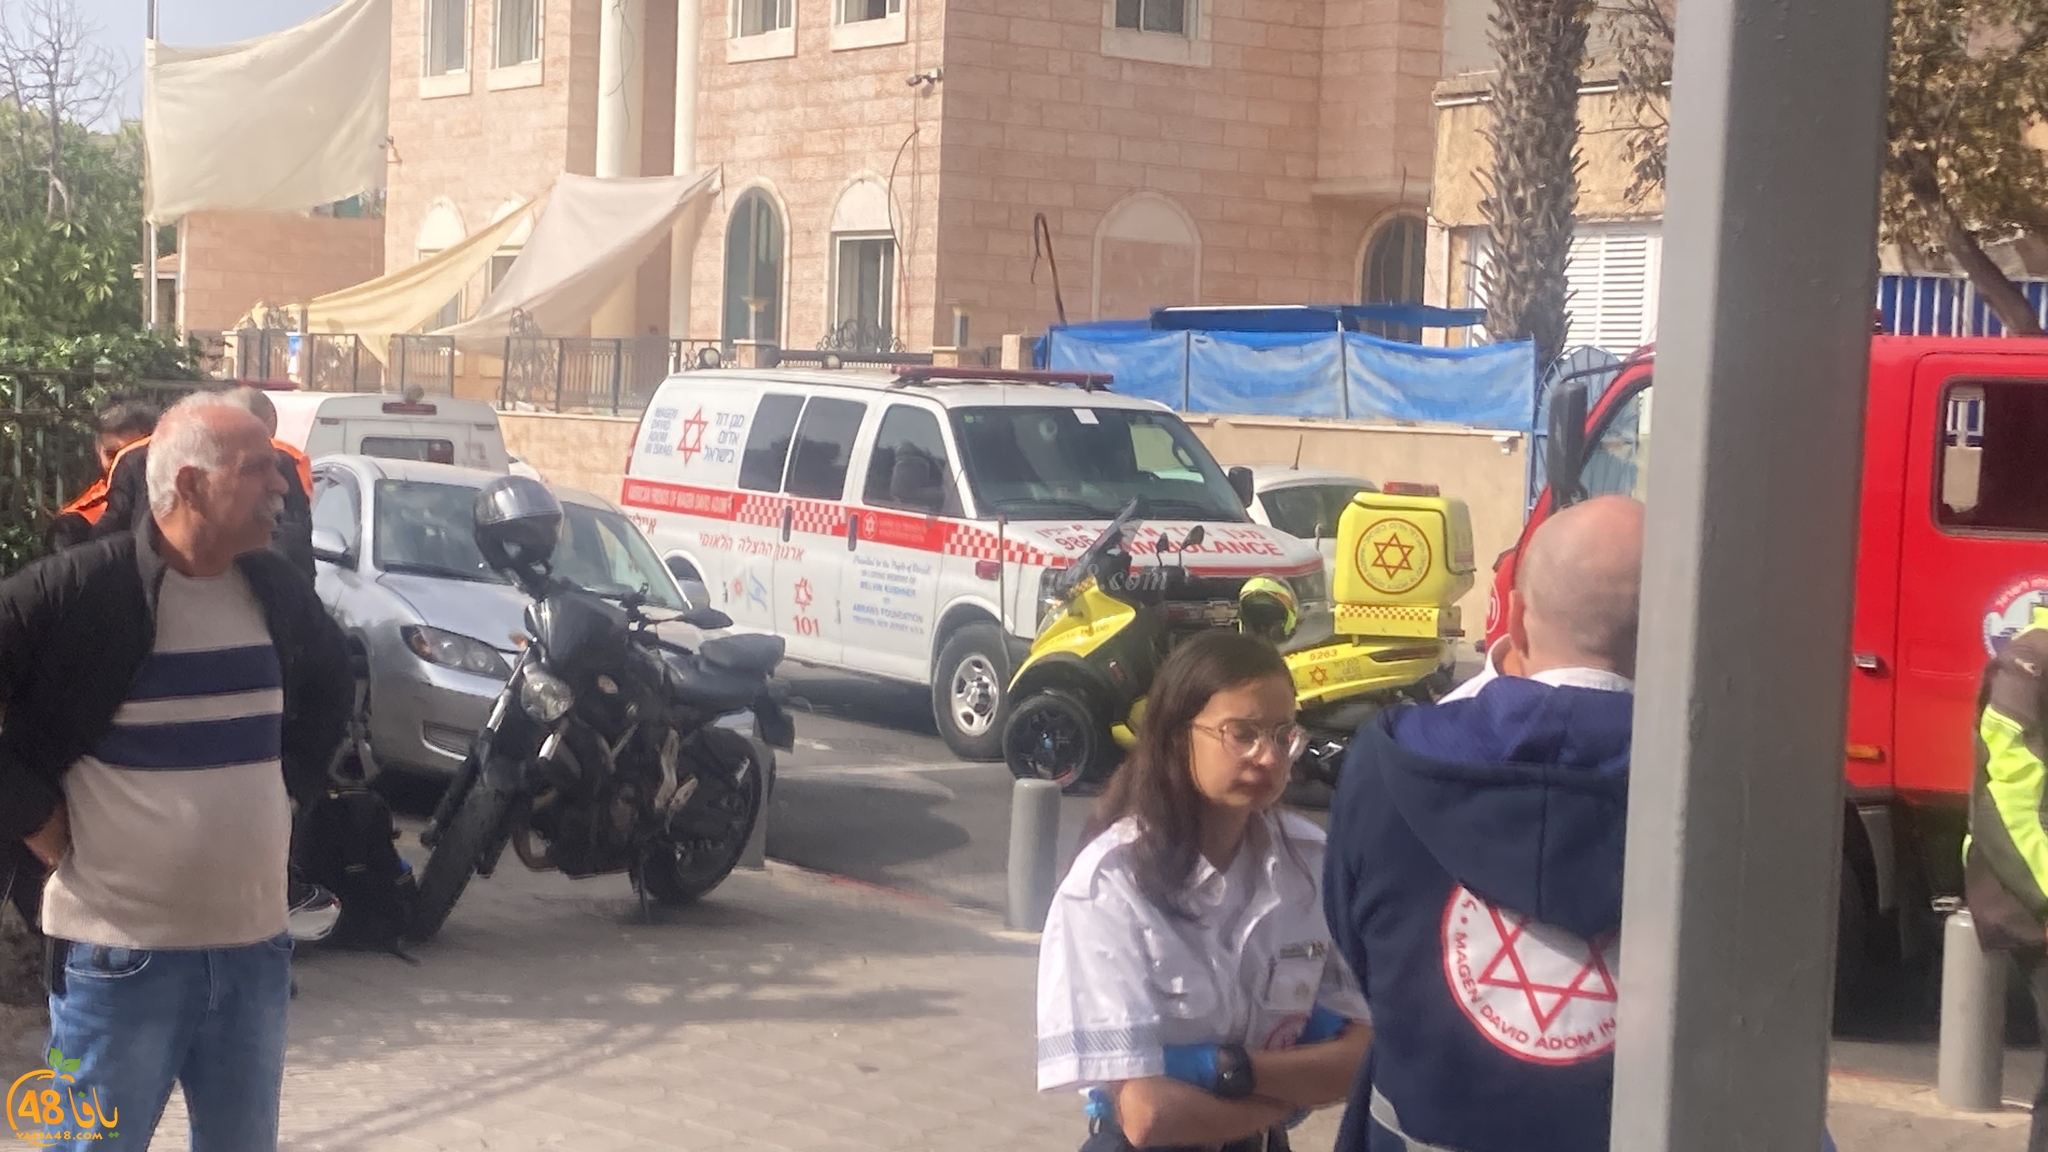  يافا: 4 اصابات طفيفة بحريق داخل شقة سكنية